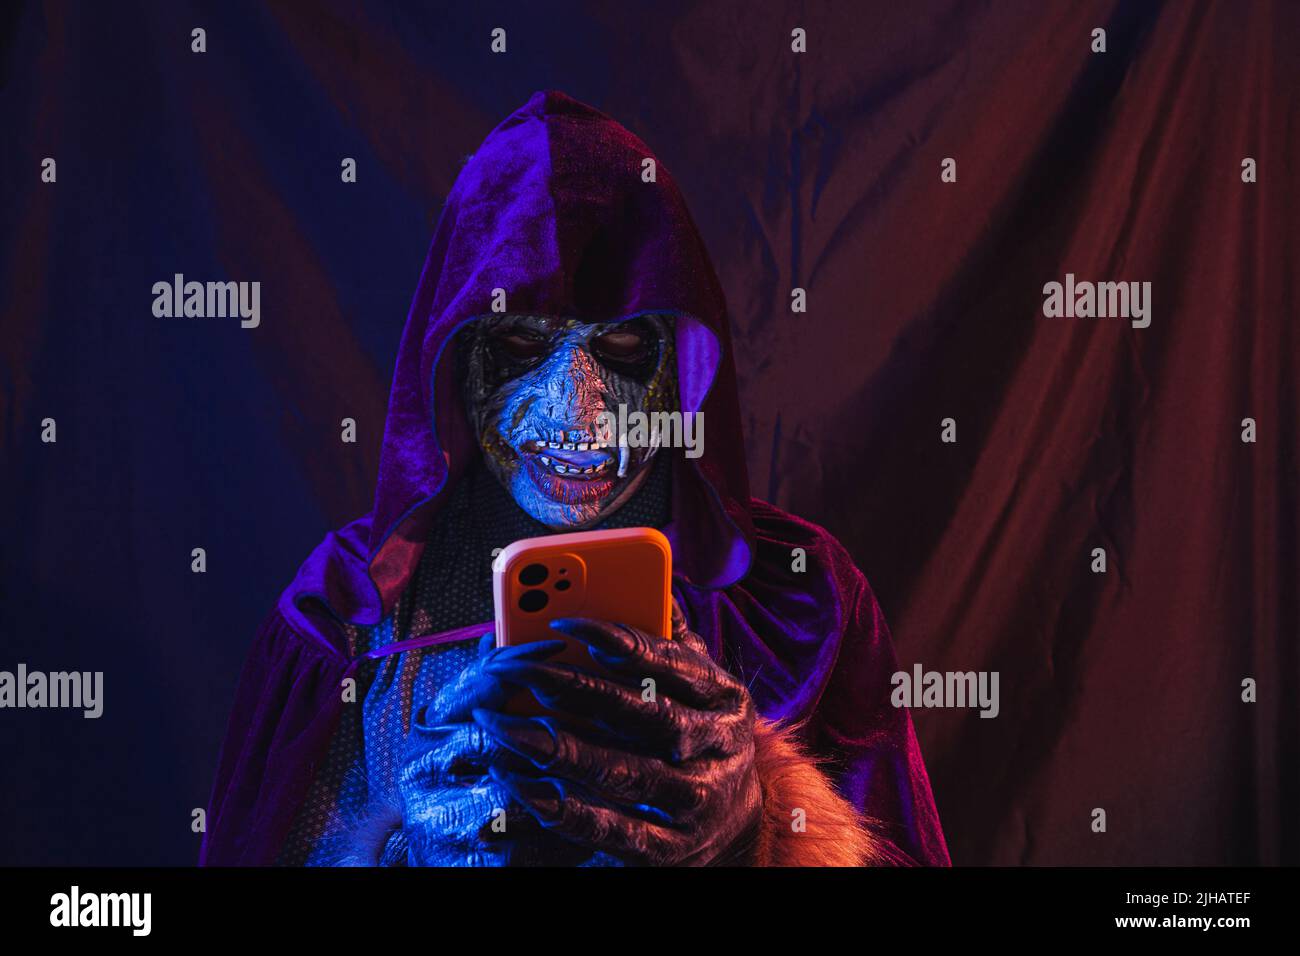 Ritratto di uno zombie vestito in una camicia e cappuccio con cappuccio utilizzando il suo cellulare. La scena è scura, illuminata da luci blu e arancioni, il volto del mostro è Foto Stock